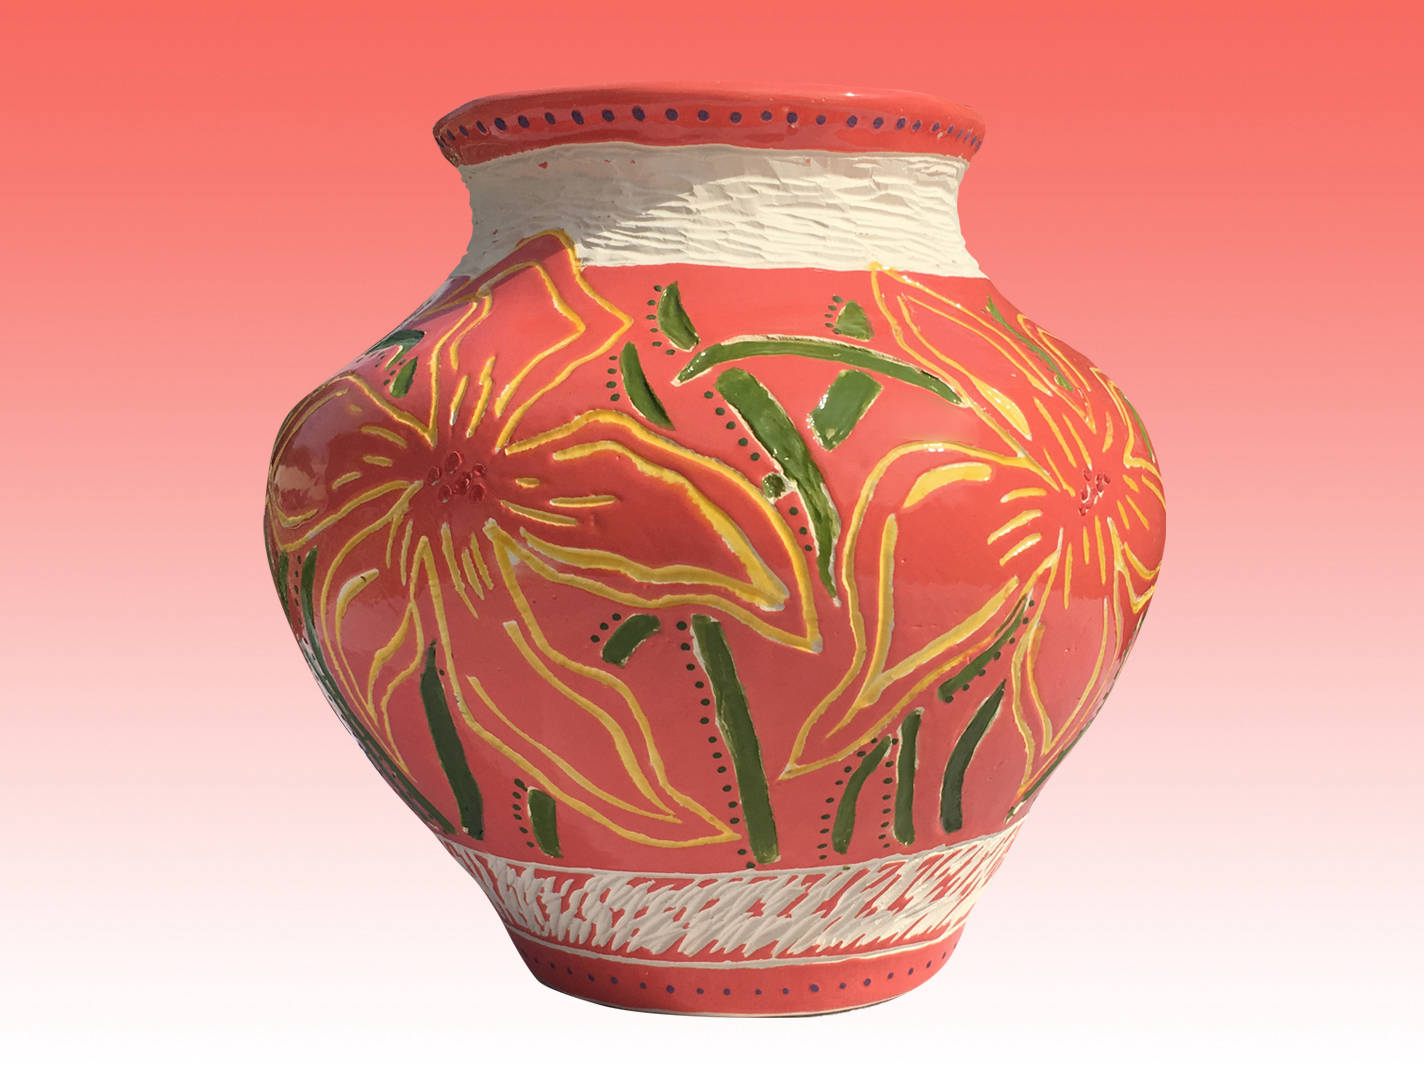 Coilbuilt Sgraffito Vase, White Stoneware